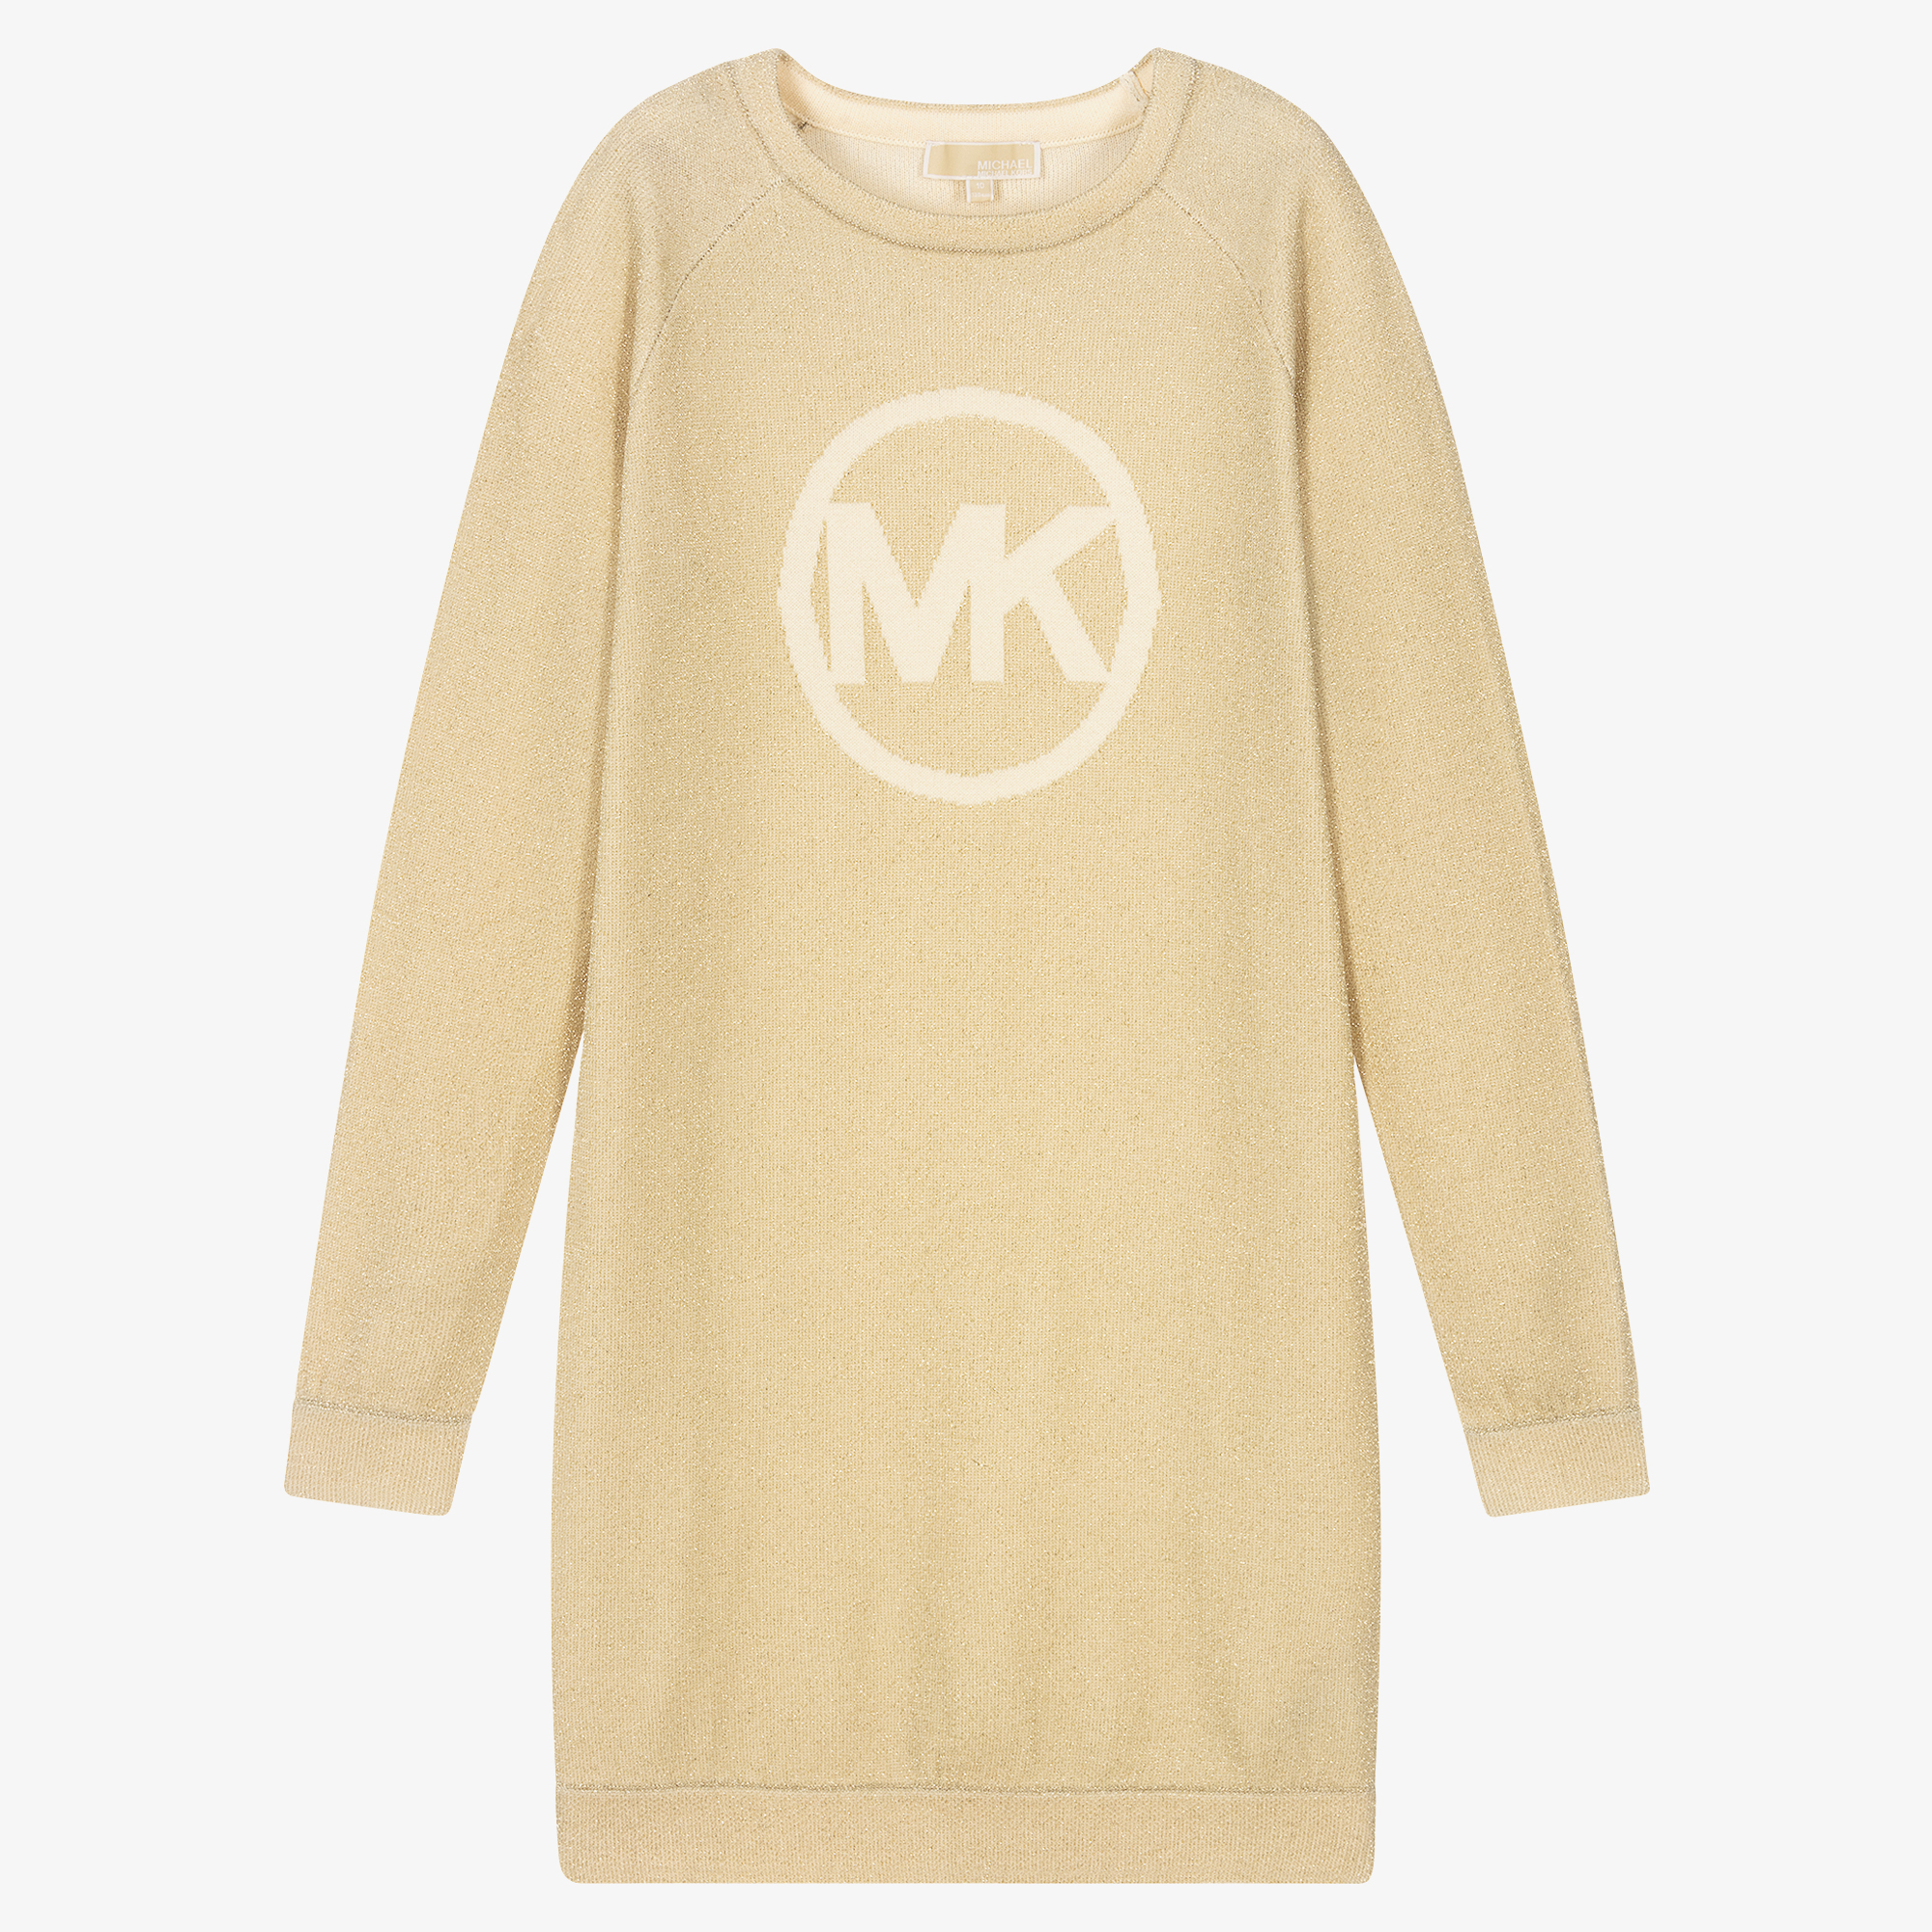 Michael Kors Kids - Teen Girls Gold Sweater Dress | Childrensalon Outlet